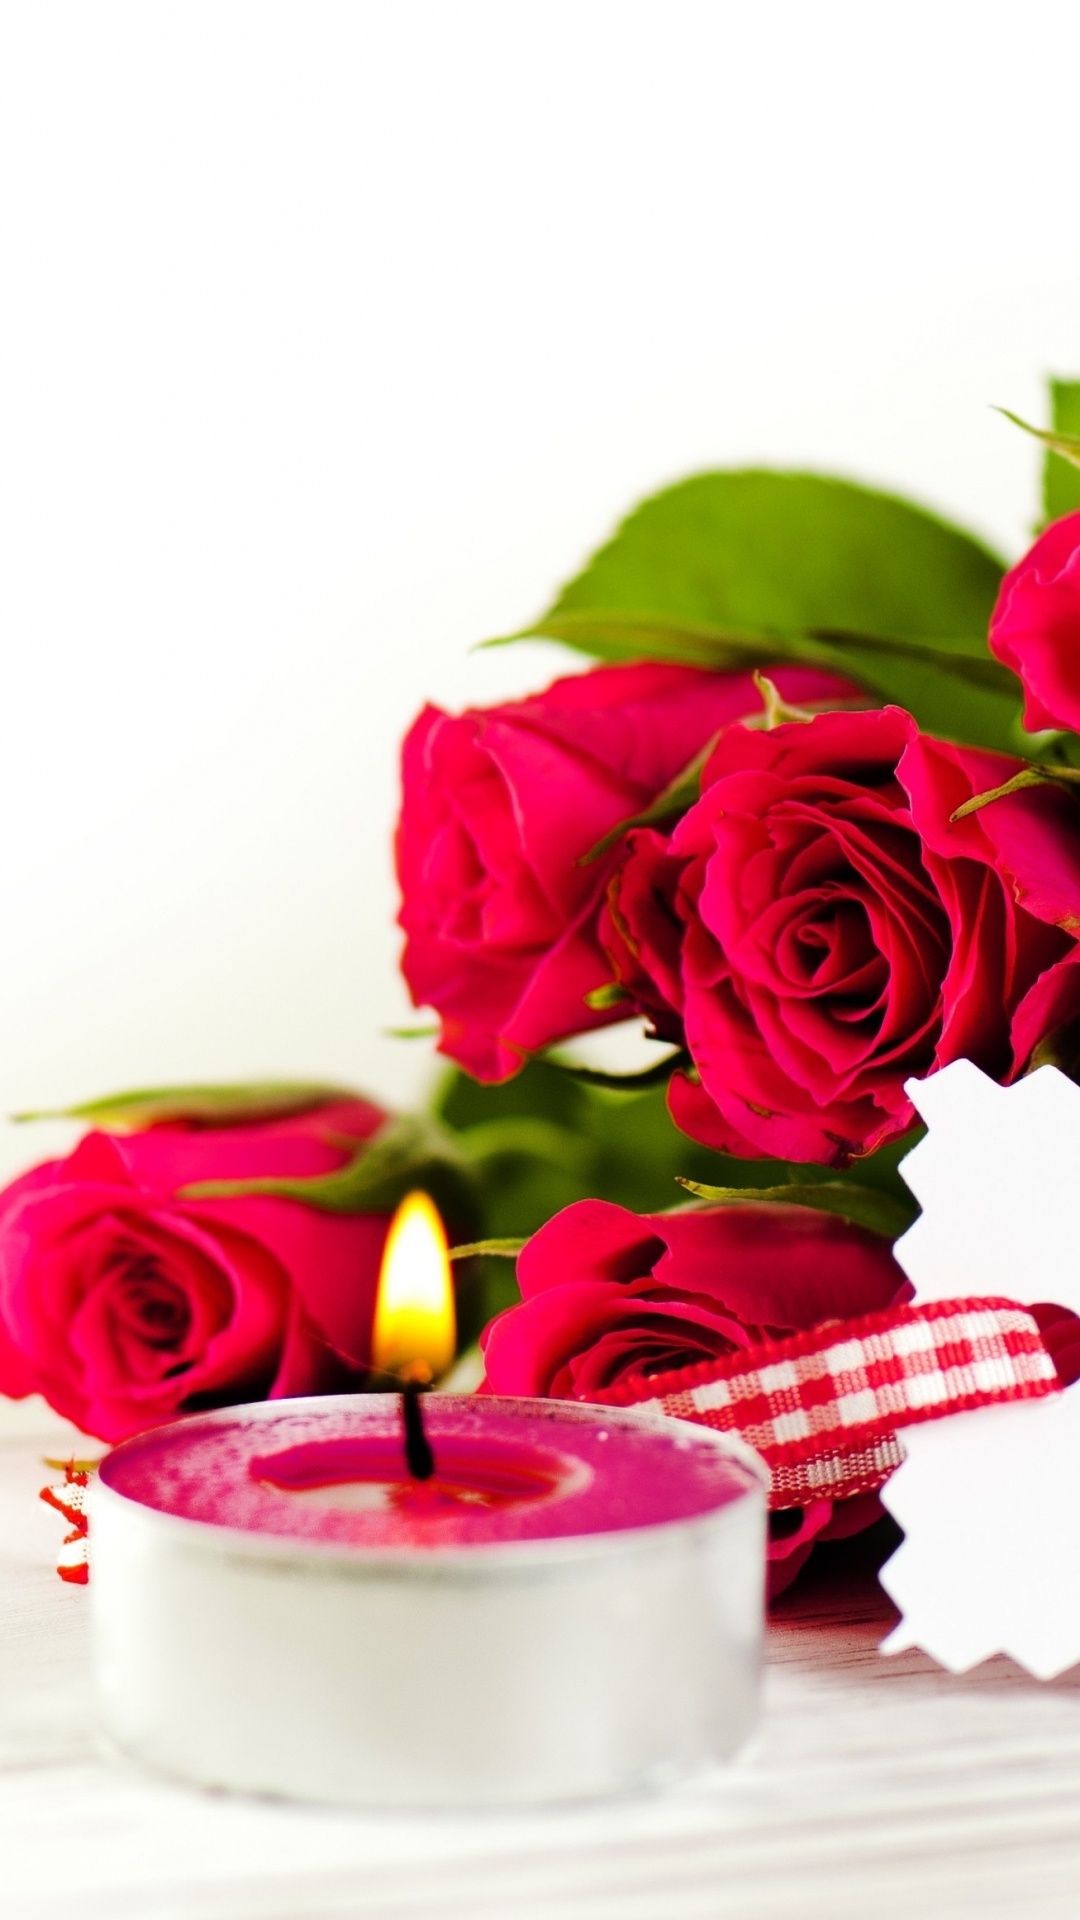 切花, 玫瑰花园, 玫瑰家庭, 结婚纪念日, 周年纪念 壁纸 1080x1920 允许